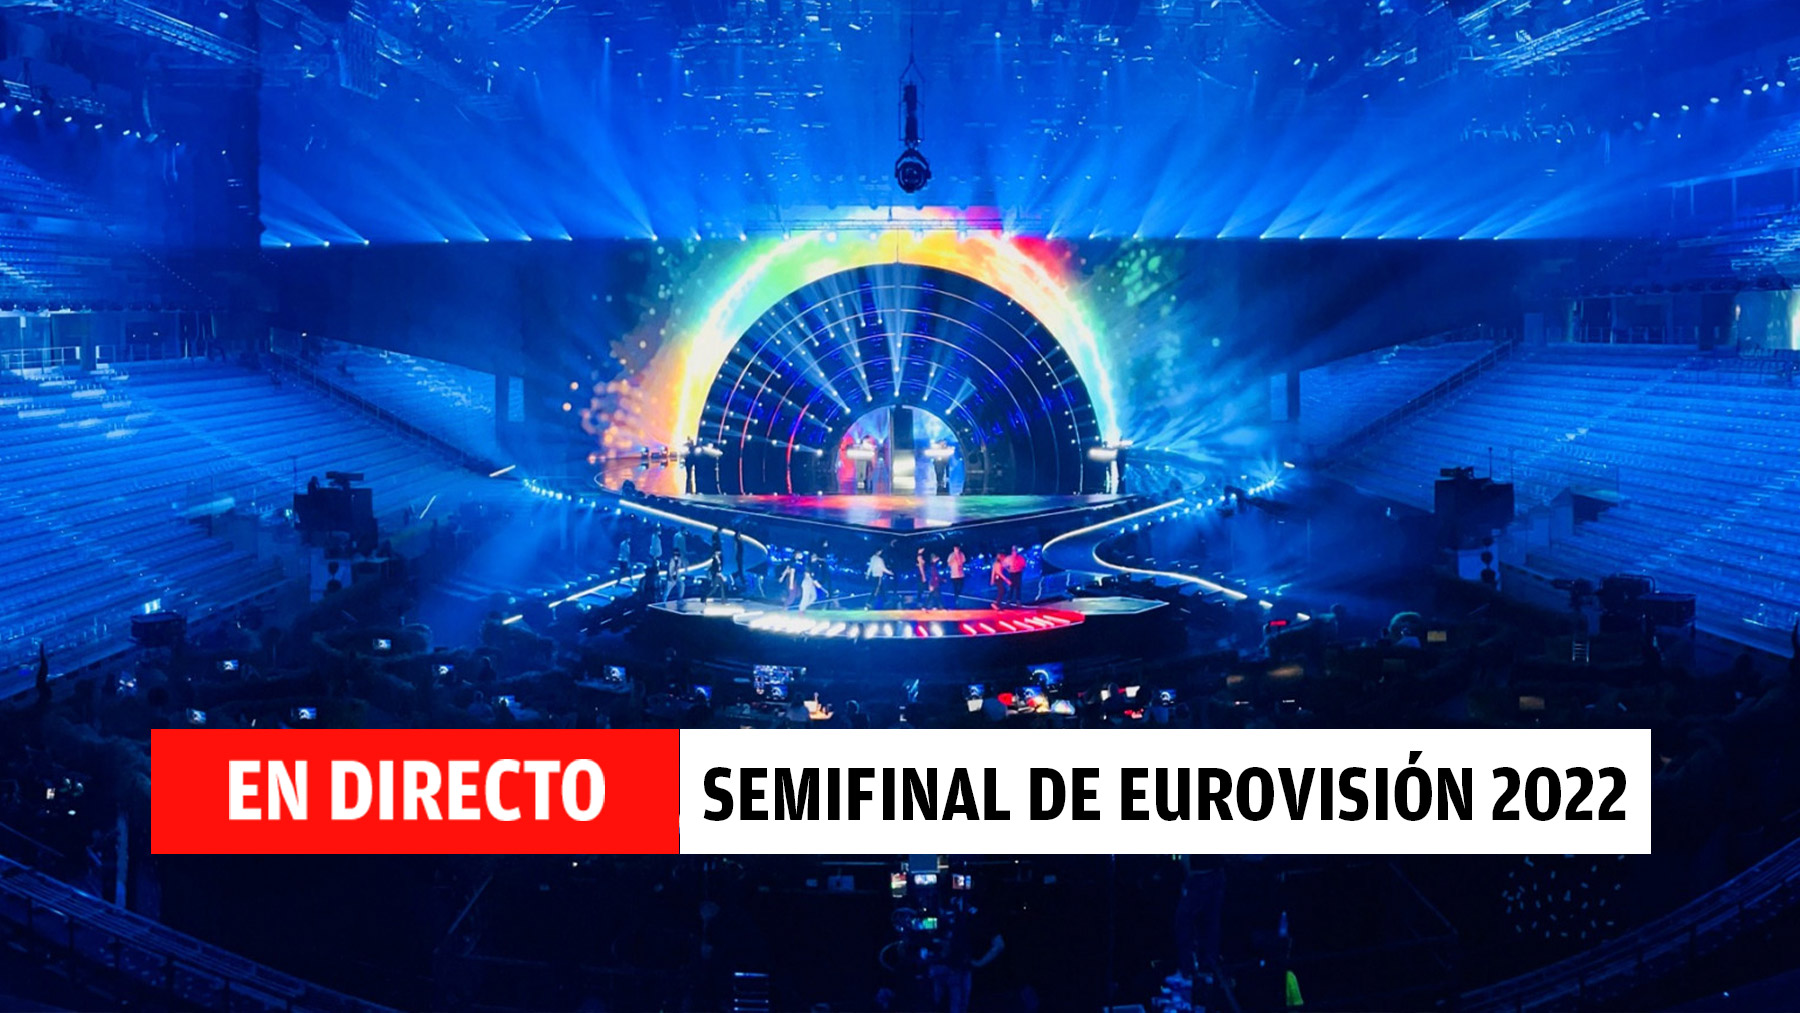 En directo, la primera semifinal de Eurovisión 2022